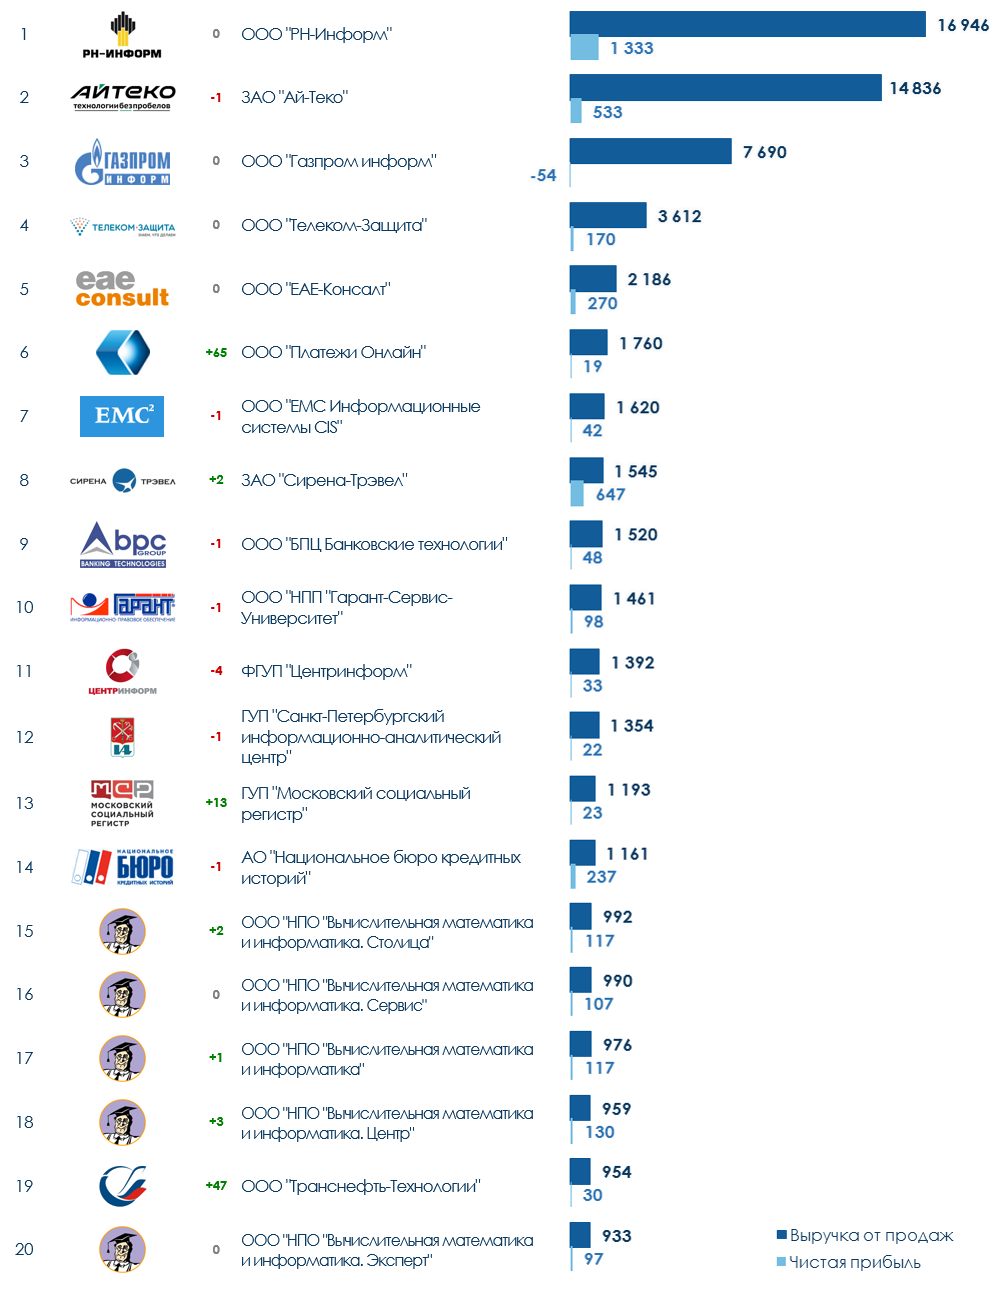 ТОП-20 компаний России по созданию БД и IT-ресурсов